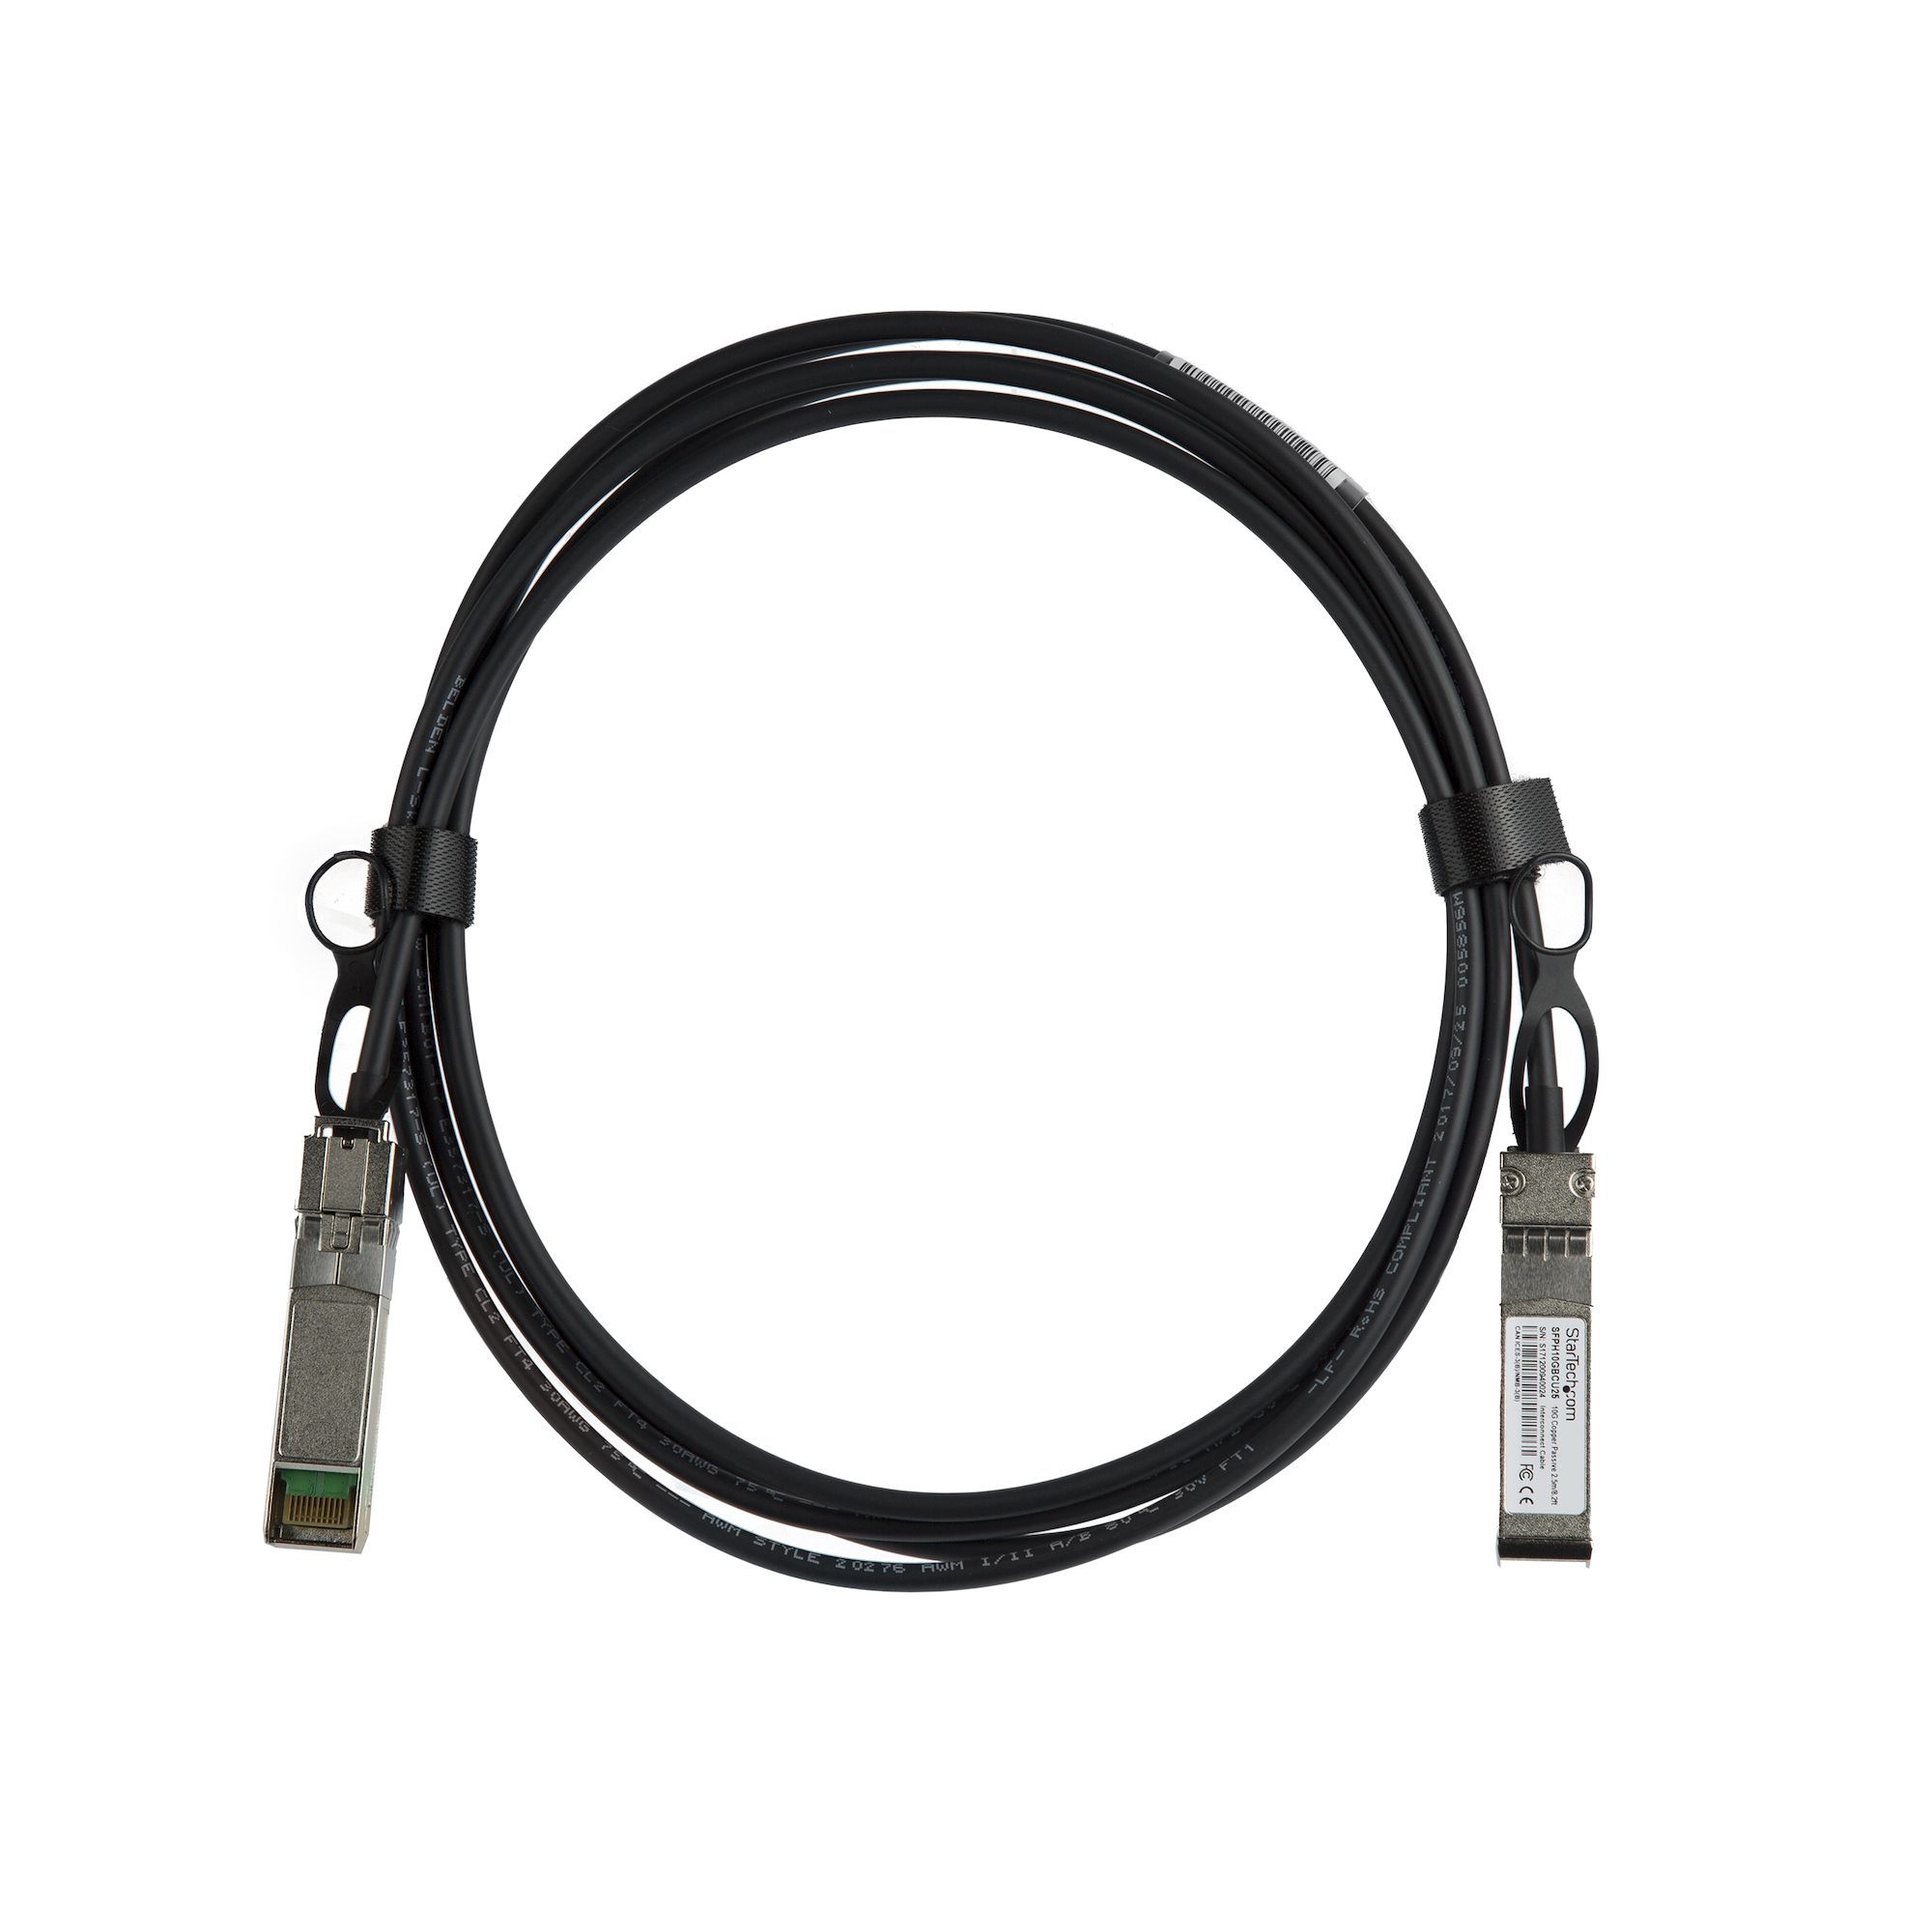 DAC Twinax ケーブル 2m MSAアンコード 銅線ダイレクトアタッチケーブル MSA準拠スイッチ対応 QSFPMM2M - 5